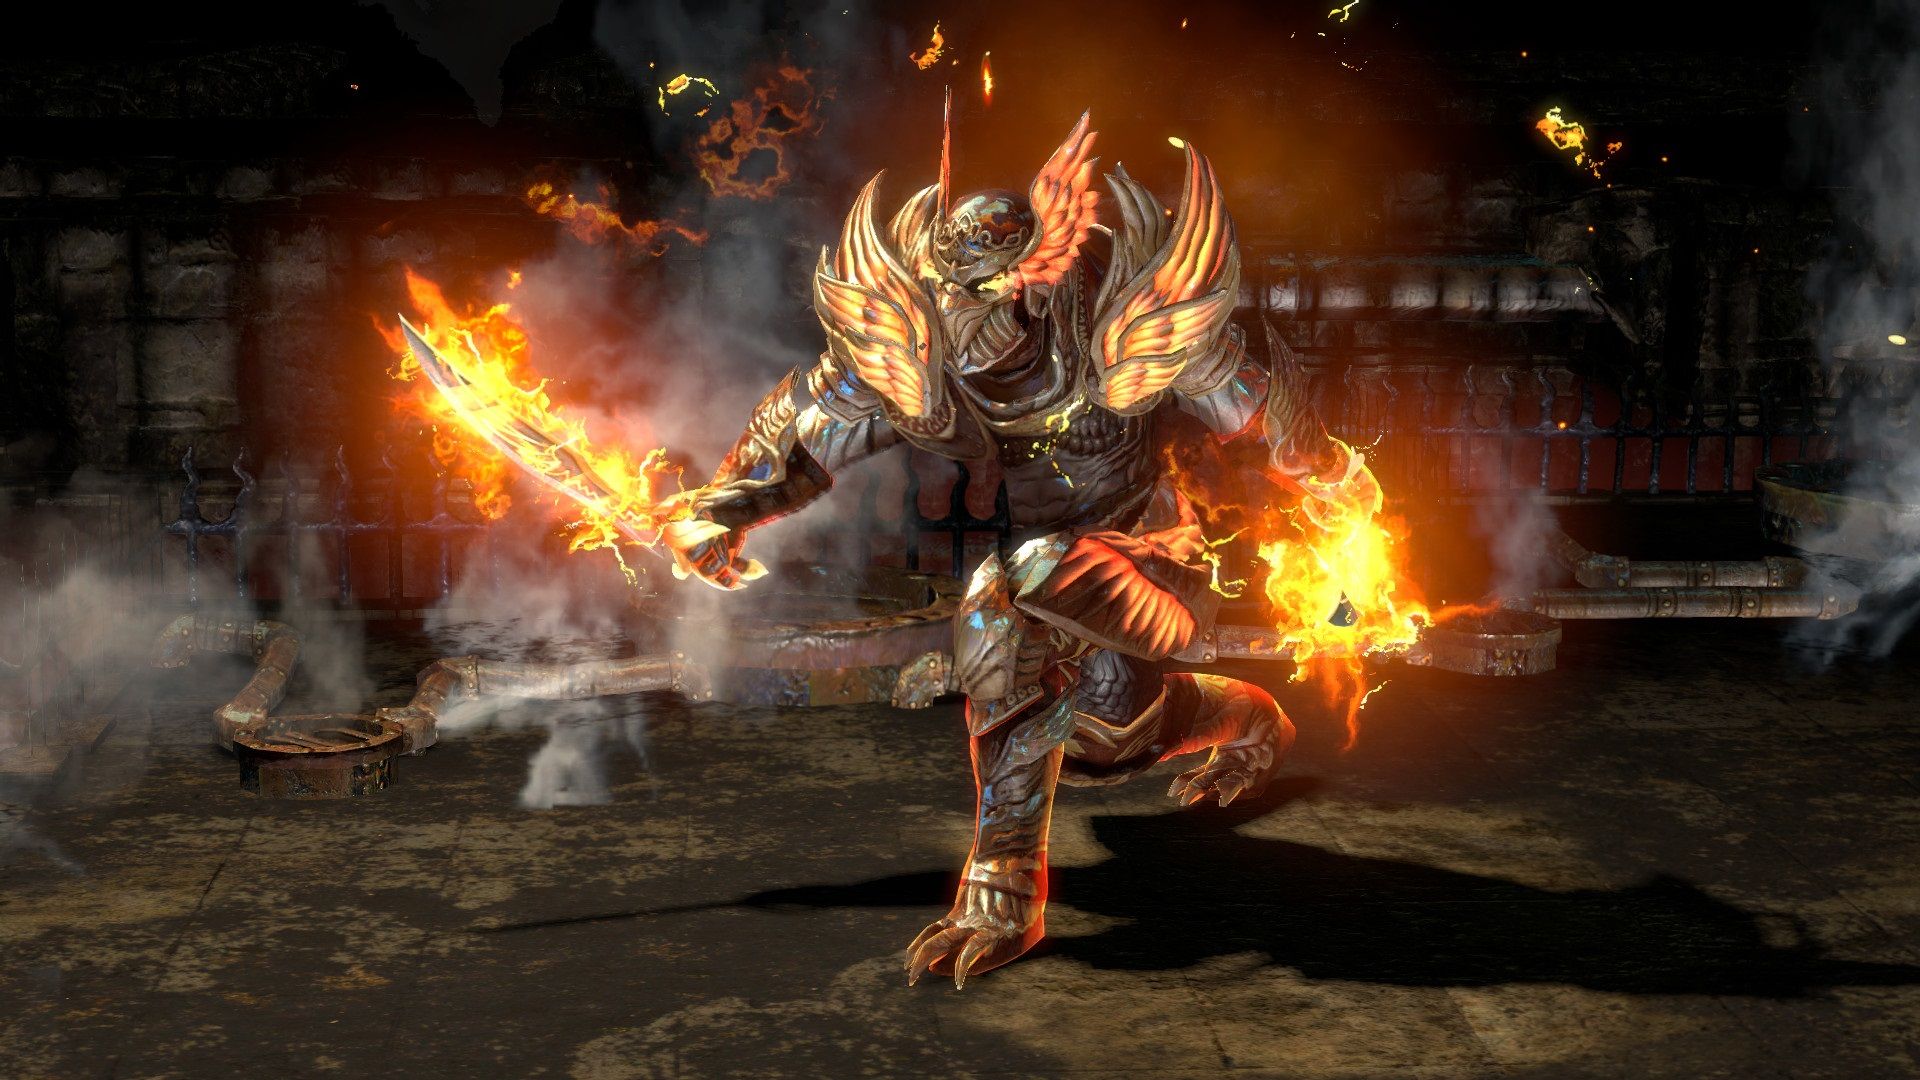 Los mejores juegos gratuitos para PC: Path of Exile. La imagen muestra un preocupado con una armadura en llamas y una espada en llamas.